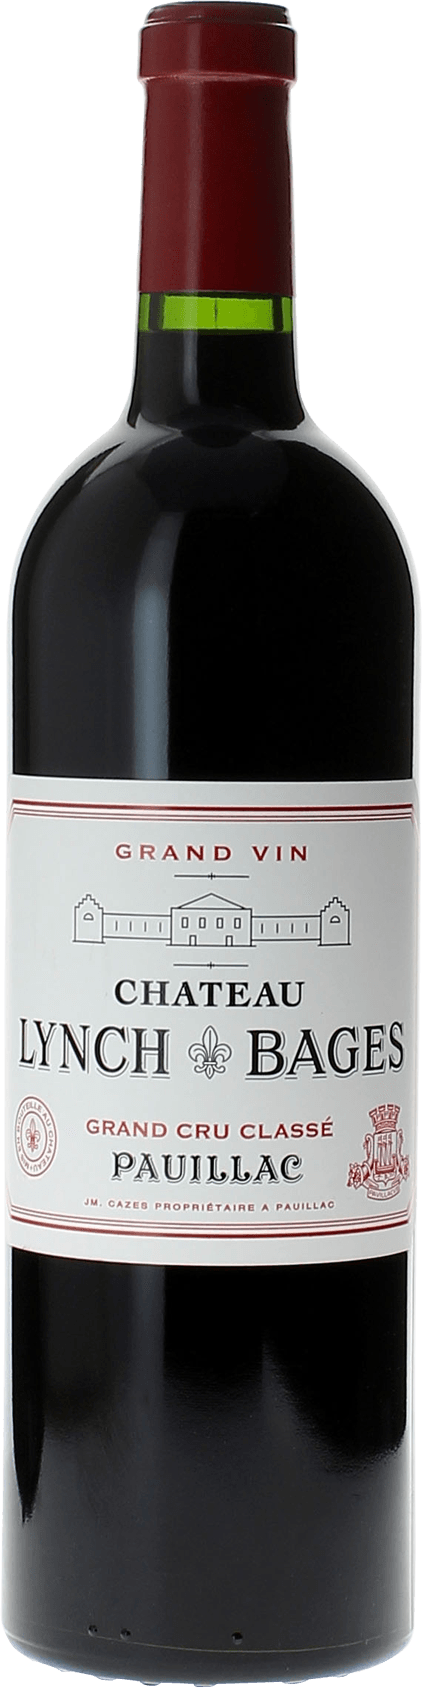 Lynch bages 2011 5 me Grand cru class Pauillac, Bordeaux rouge